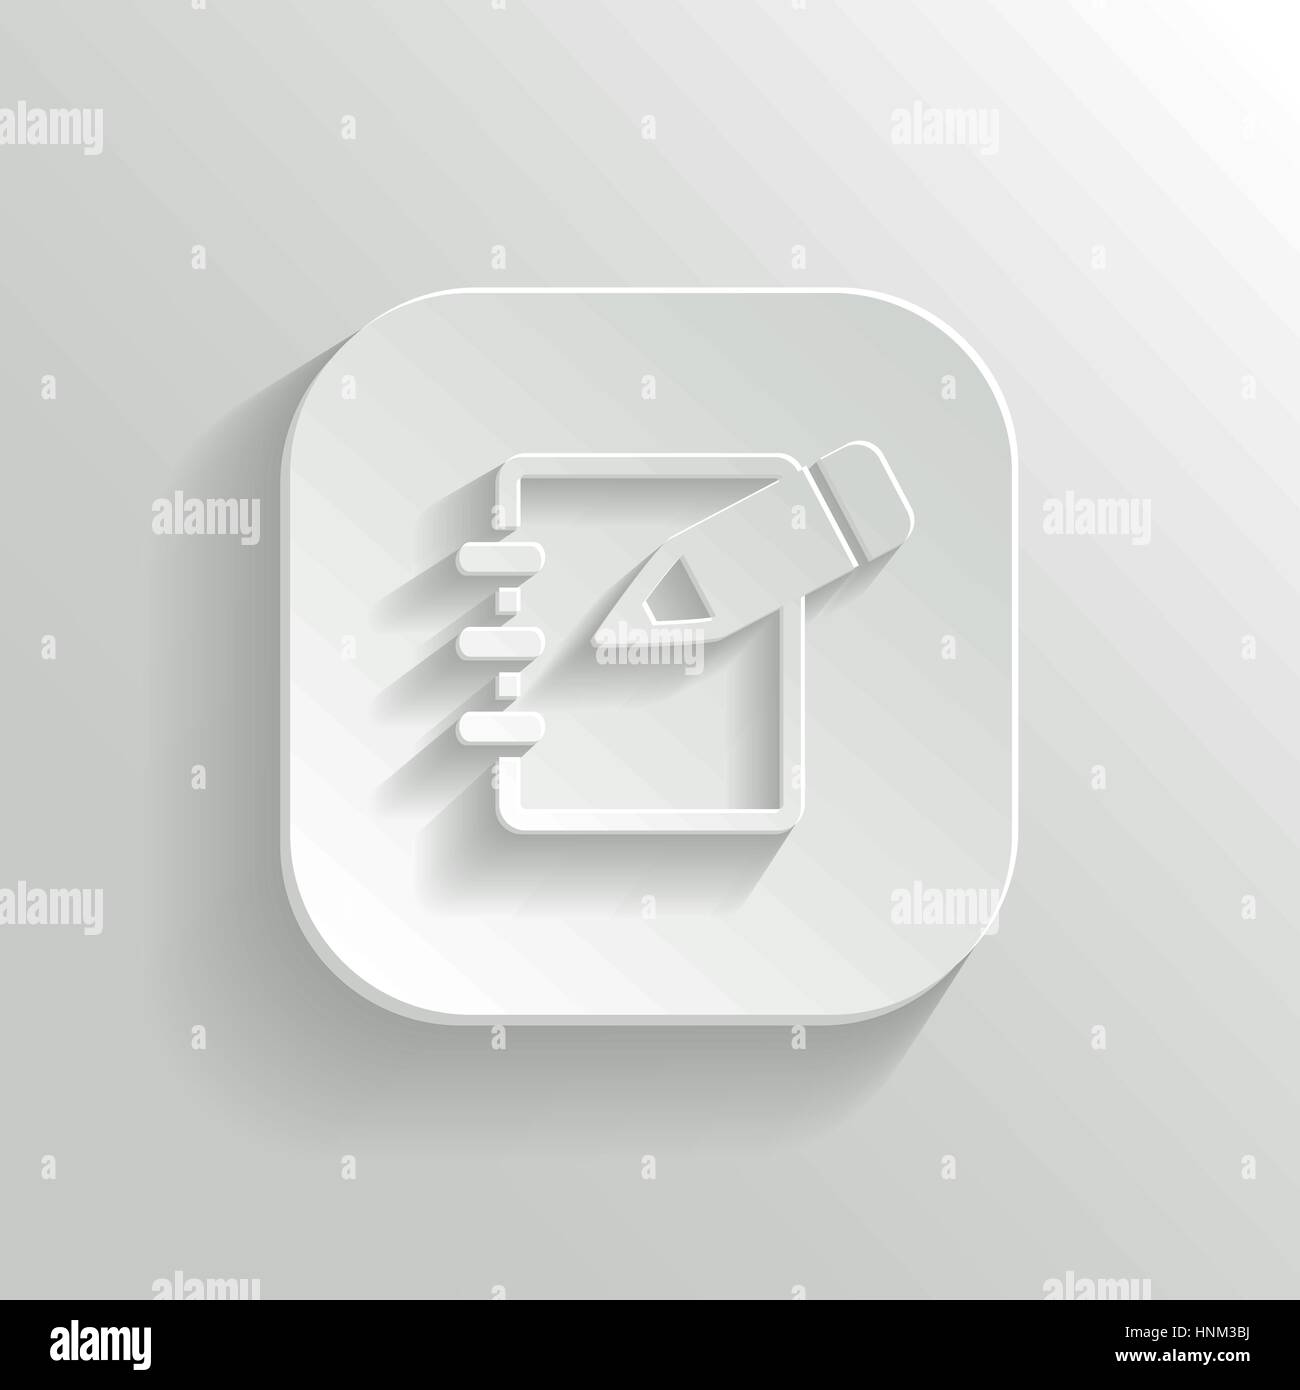 Icona Blocco note - vettore app bianco pulsante con ombra Illustrazione Vettoriale